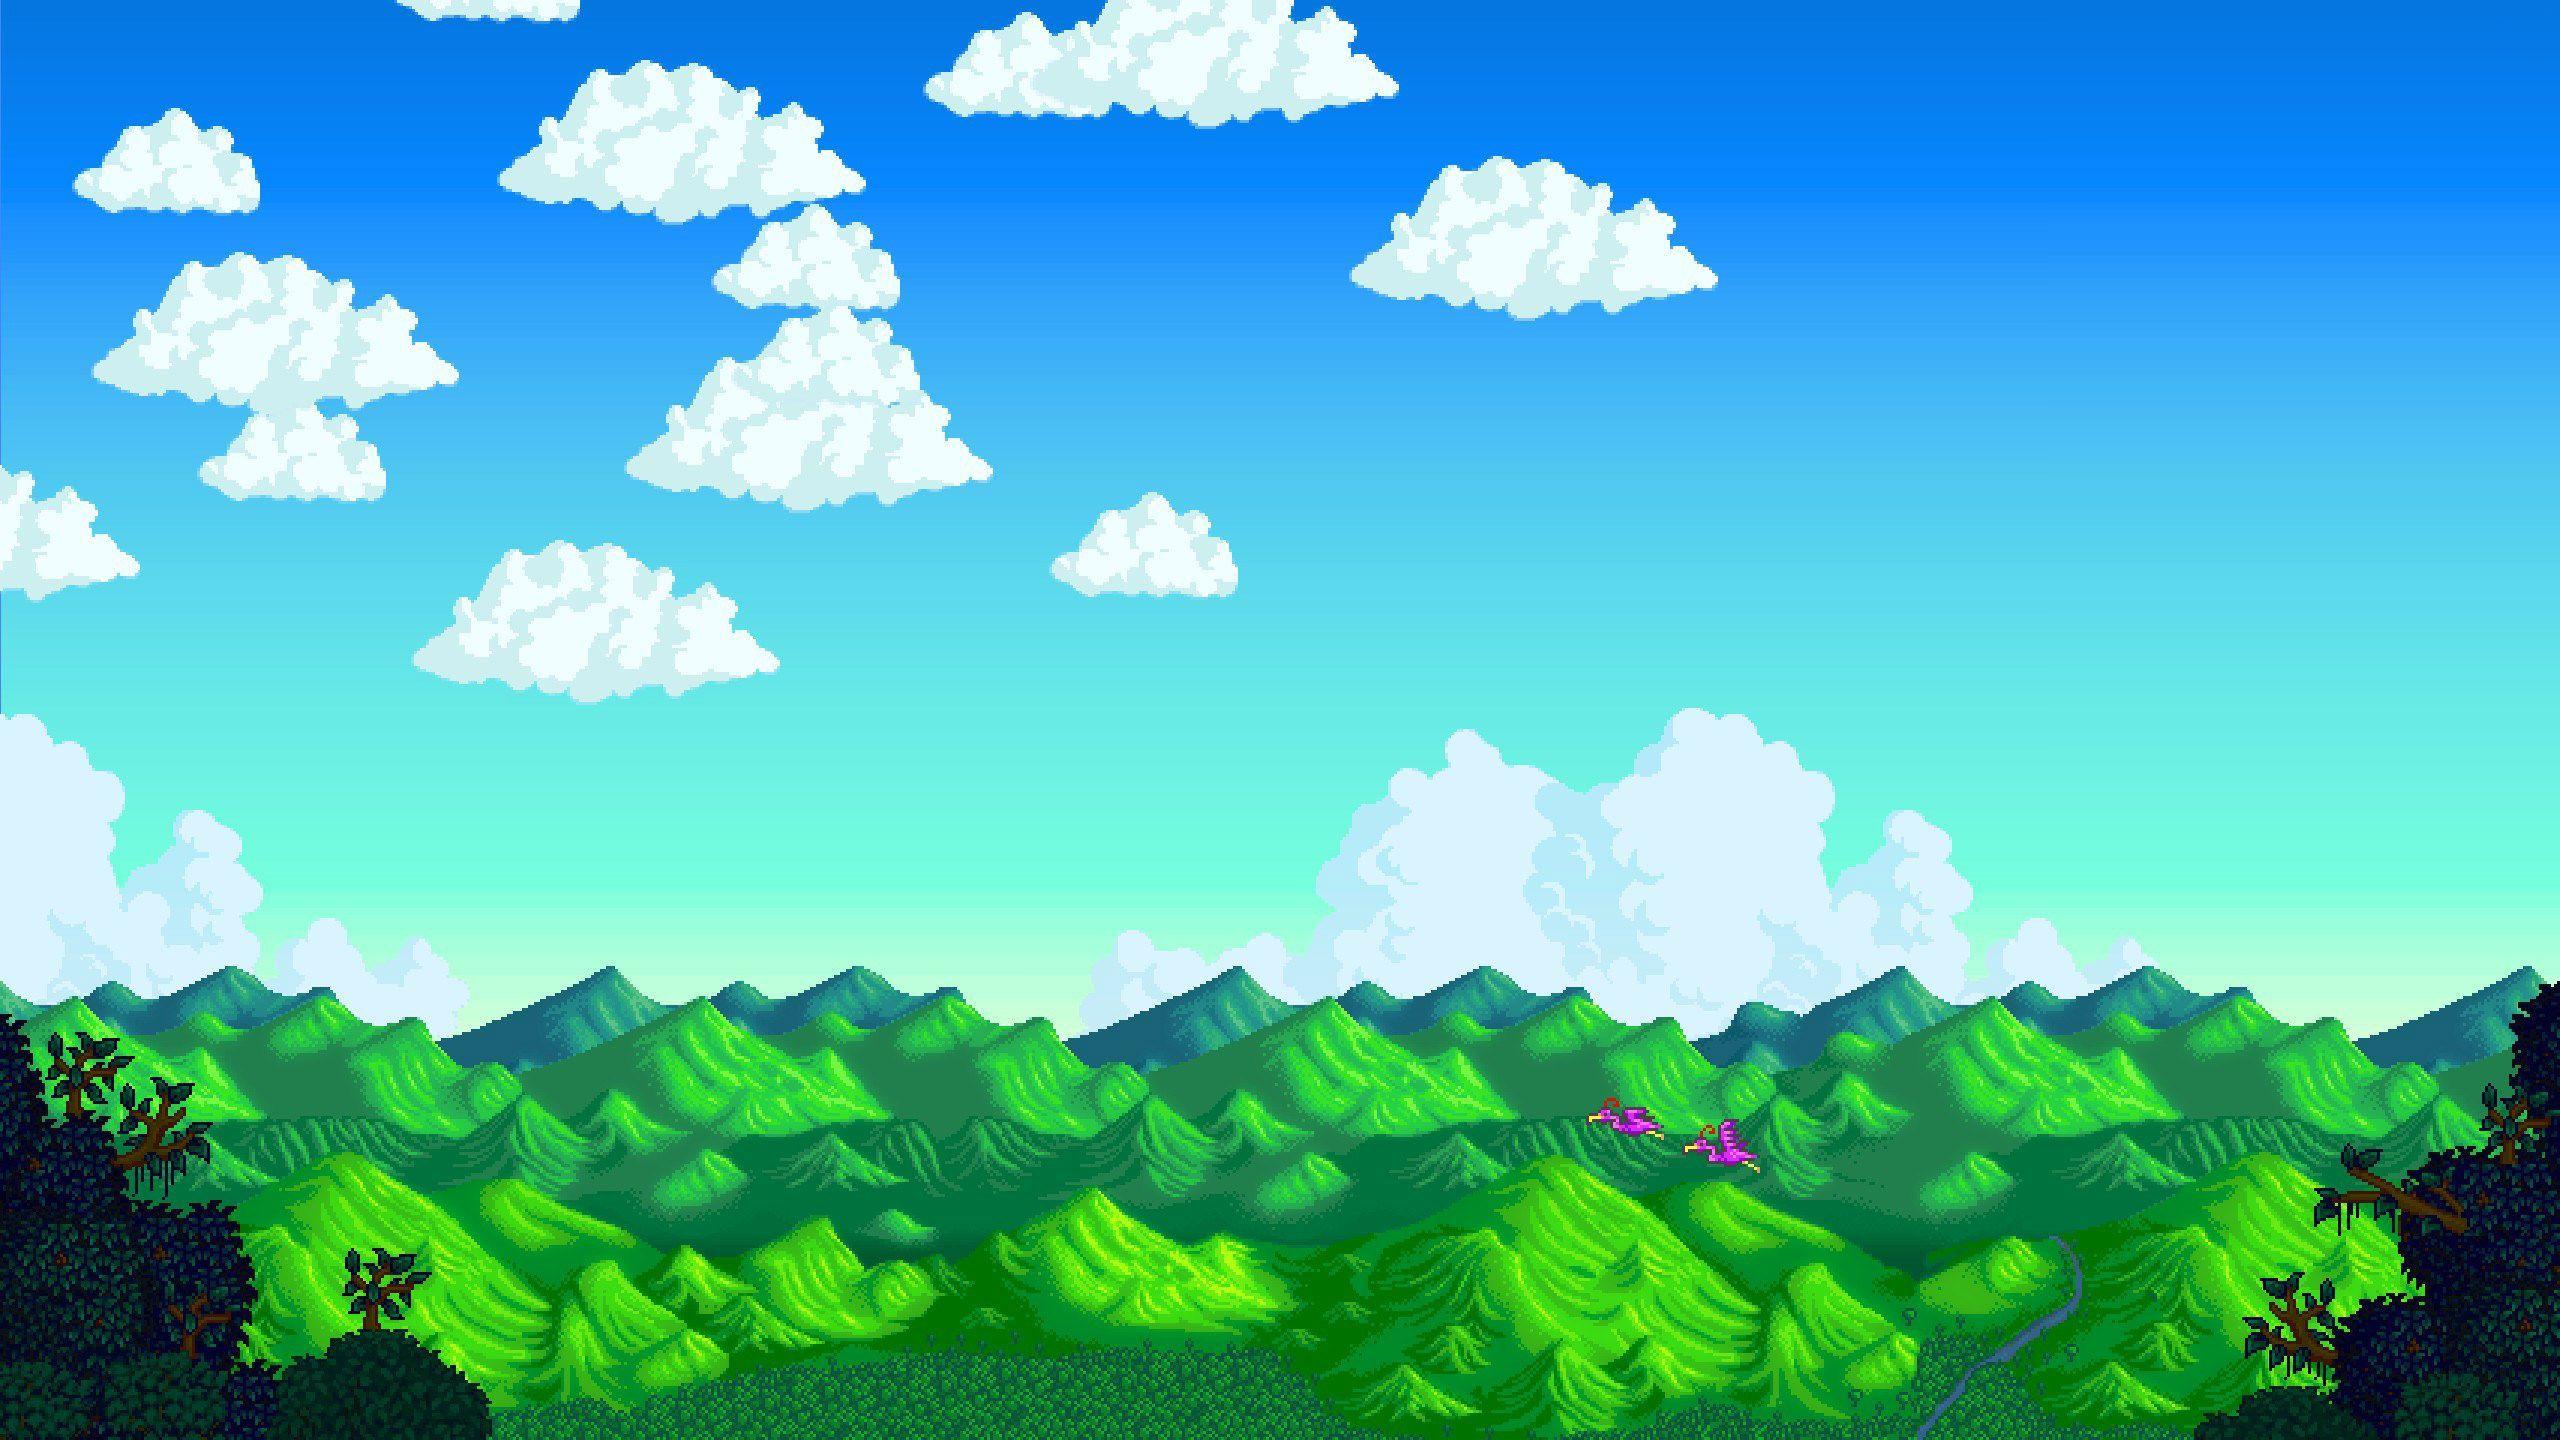 Stardew Valley là một trong những trò chơi đình đám và đang được yêu thích hiện nay. Hãy cài đặt hình nền Stardew Valley trên máy tính của bạn để khám phá thế giới ảo đầy màu sắc và thú vị này.